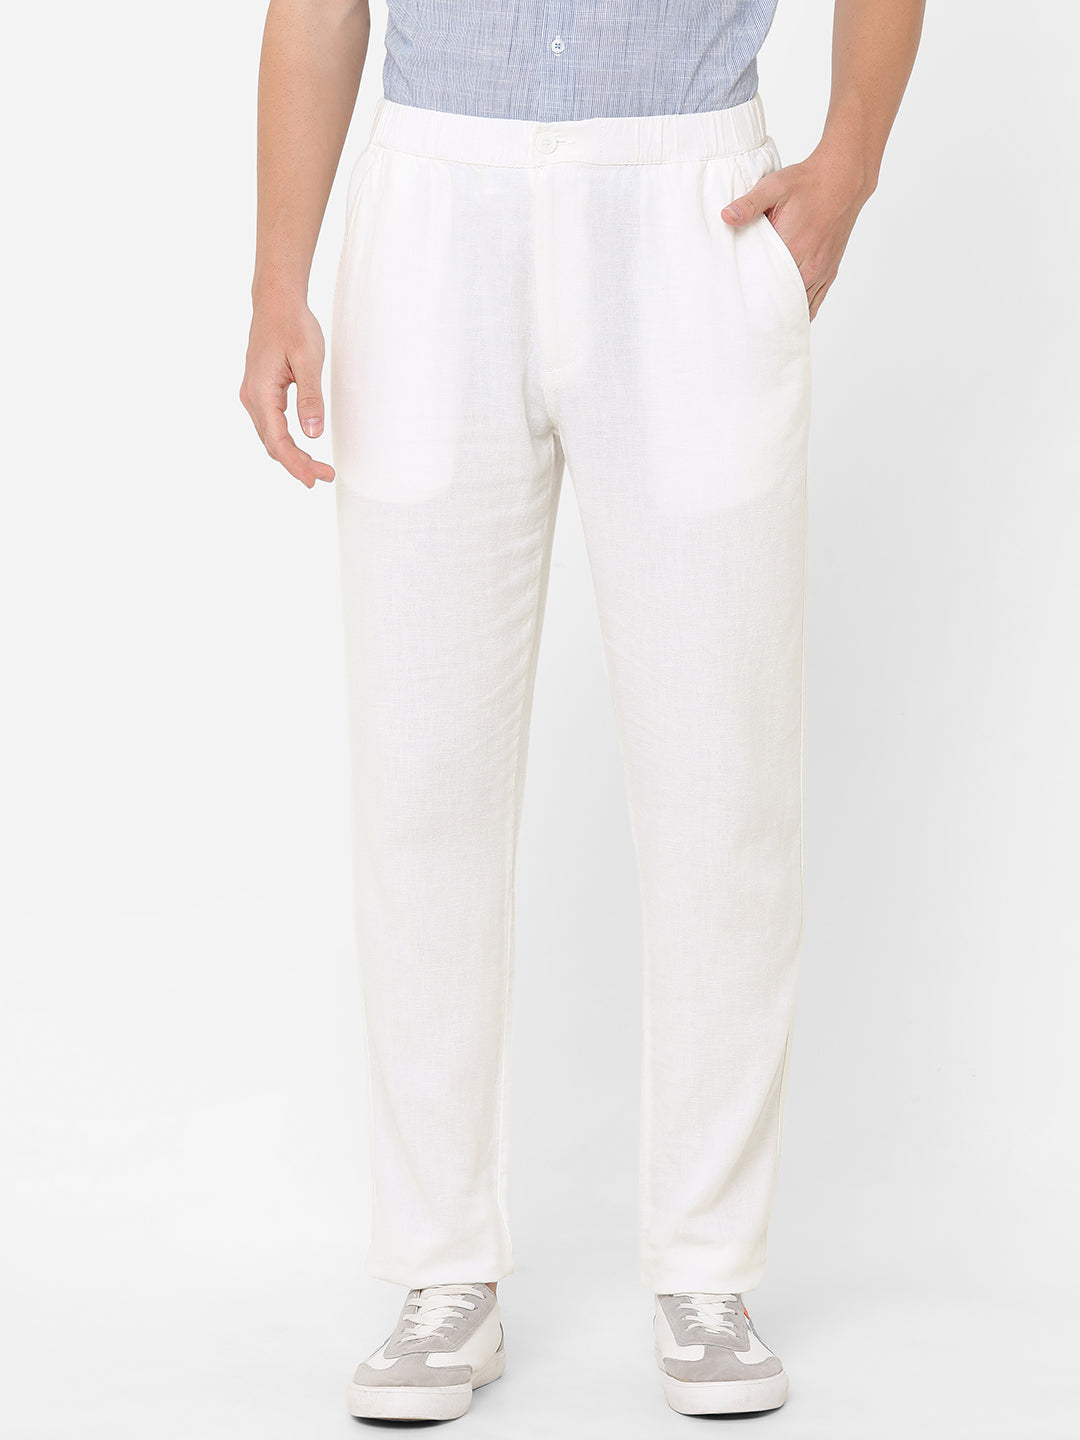 Men's White Cotton Linen Regular Fit Pant